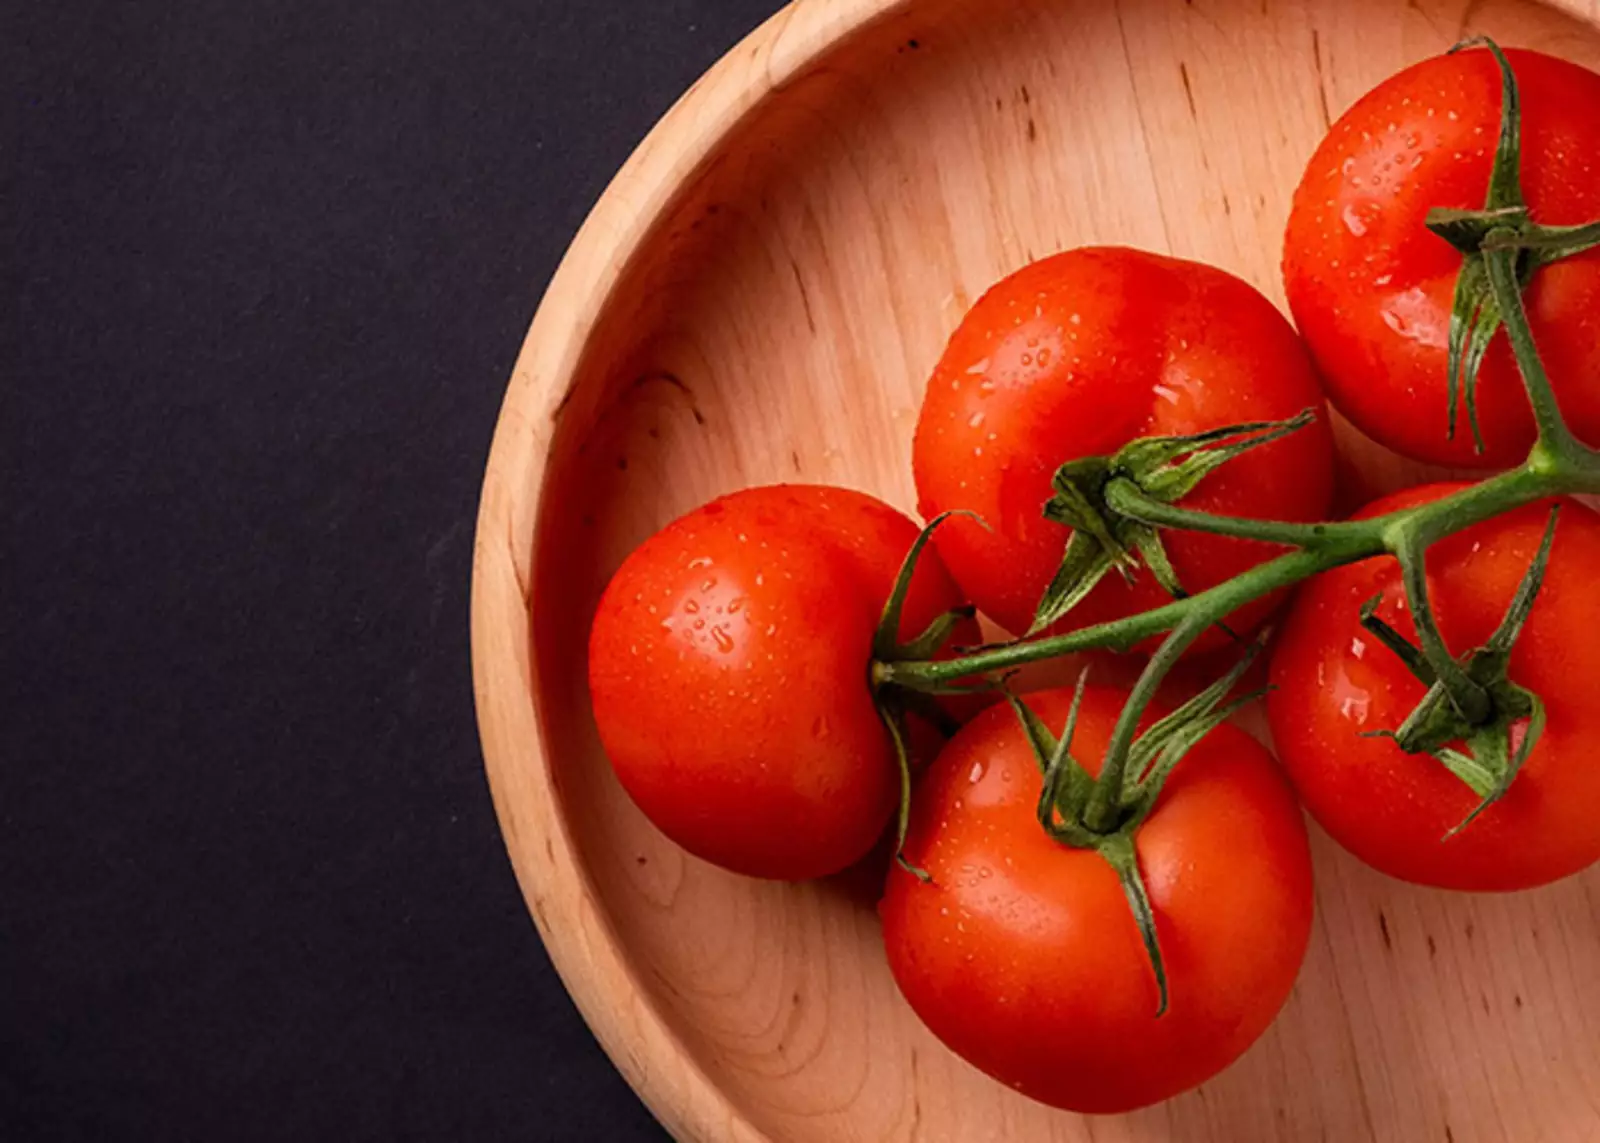 Не оставляйте помидоры в холодильнике. Холод меняет их химический состав и вкусовые качества. Храните томаты при комнатной температуре.